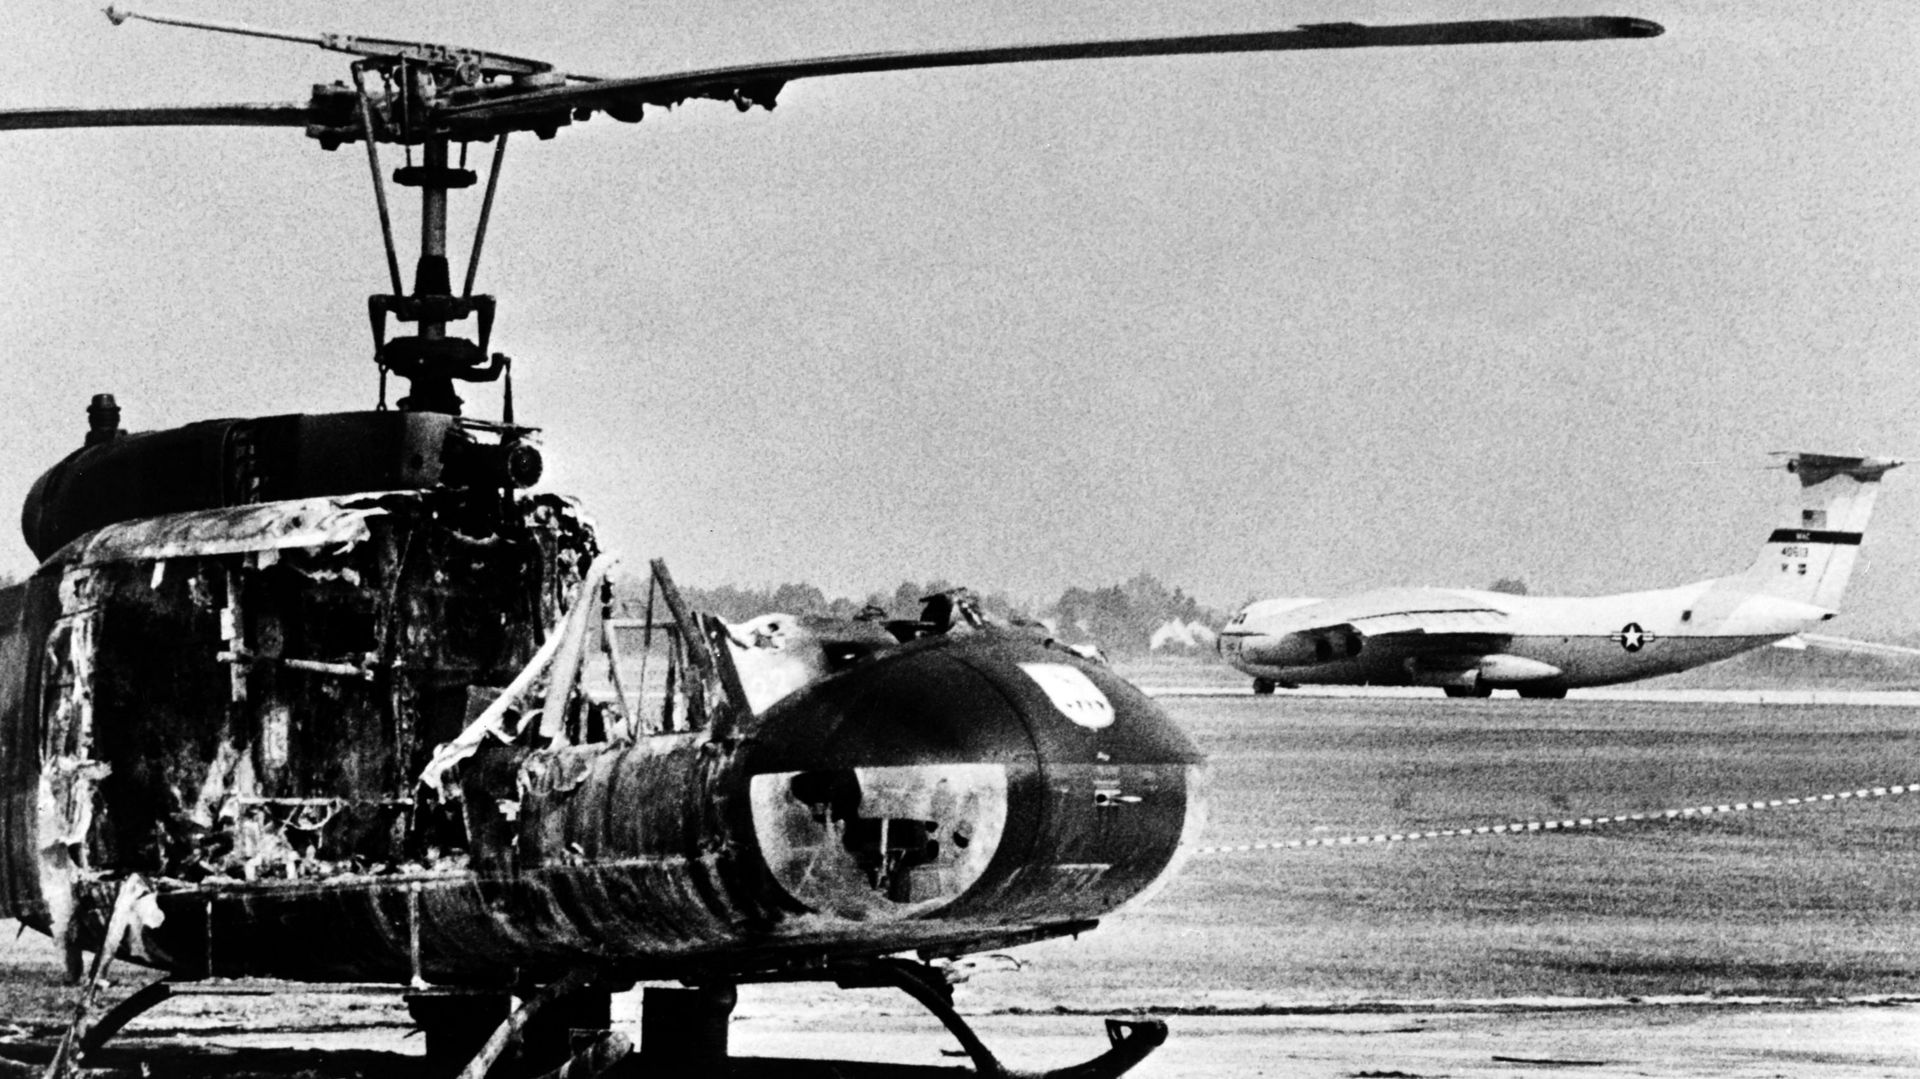 Cette photo d’archive prise le 7 septembre 1972 montre un hélicoptère de l’armée incendié sur la base aérienne de Fuerstenfeldbruck, après que des terroristes palestiniens du groupe "Septembre noir" ont été tués.